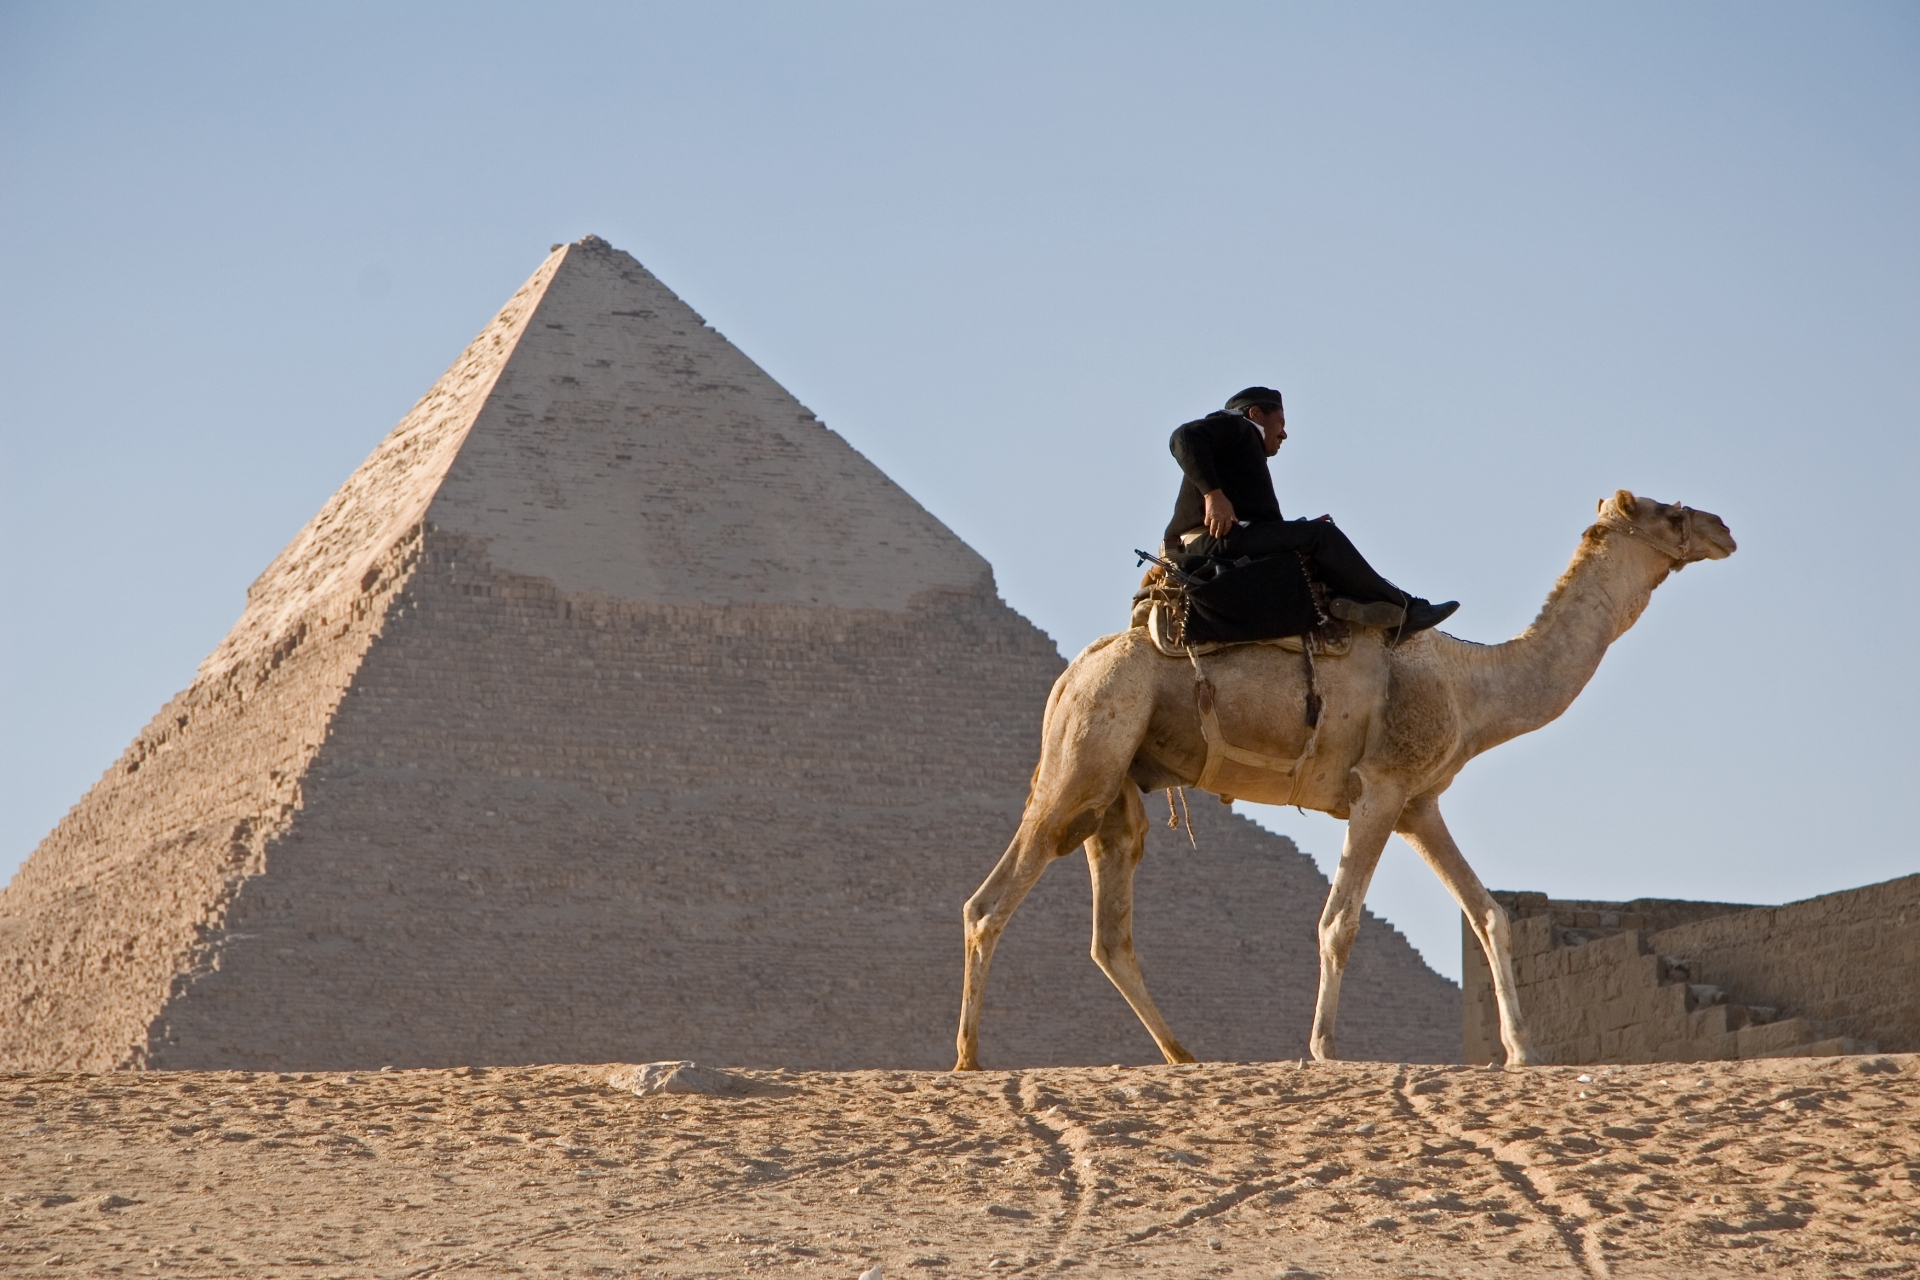 エジプトの国旗の歴史とは 観光前に知っておきたい意味や由来も Travelnote トラベルノート